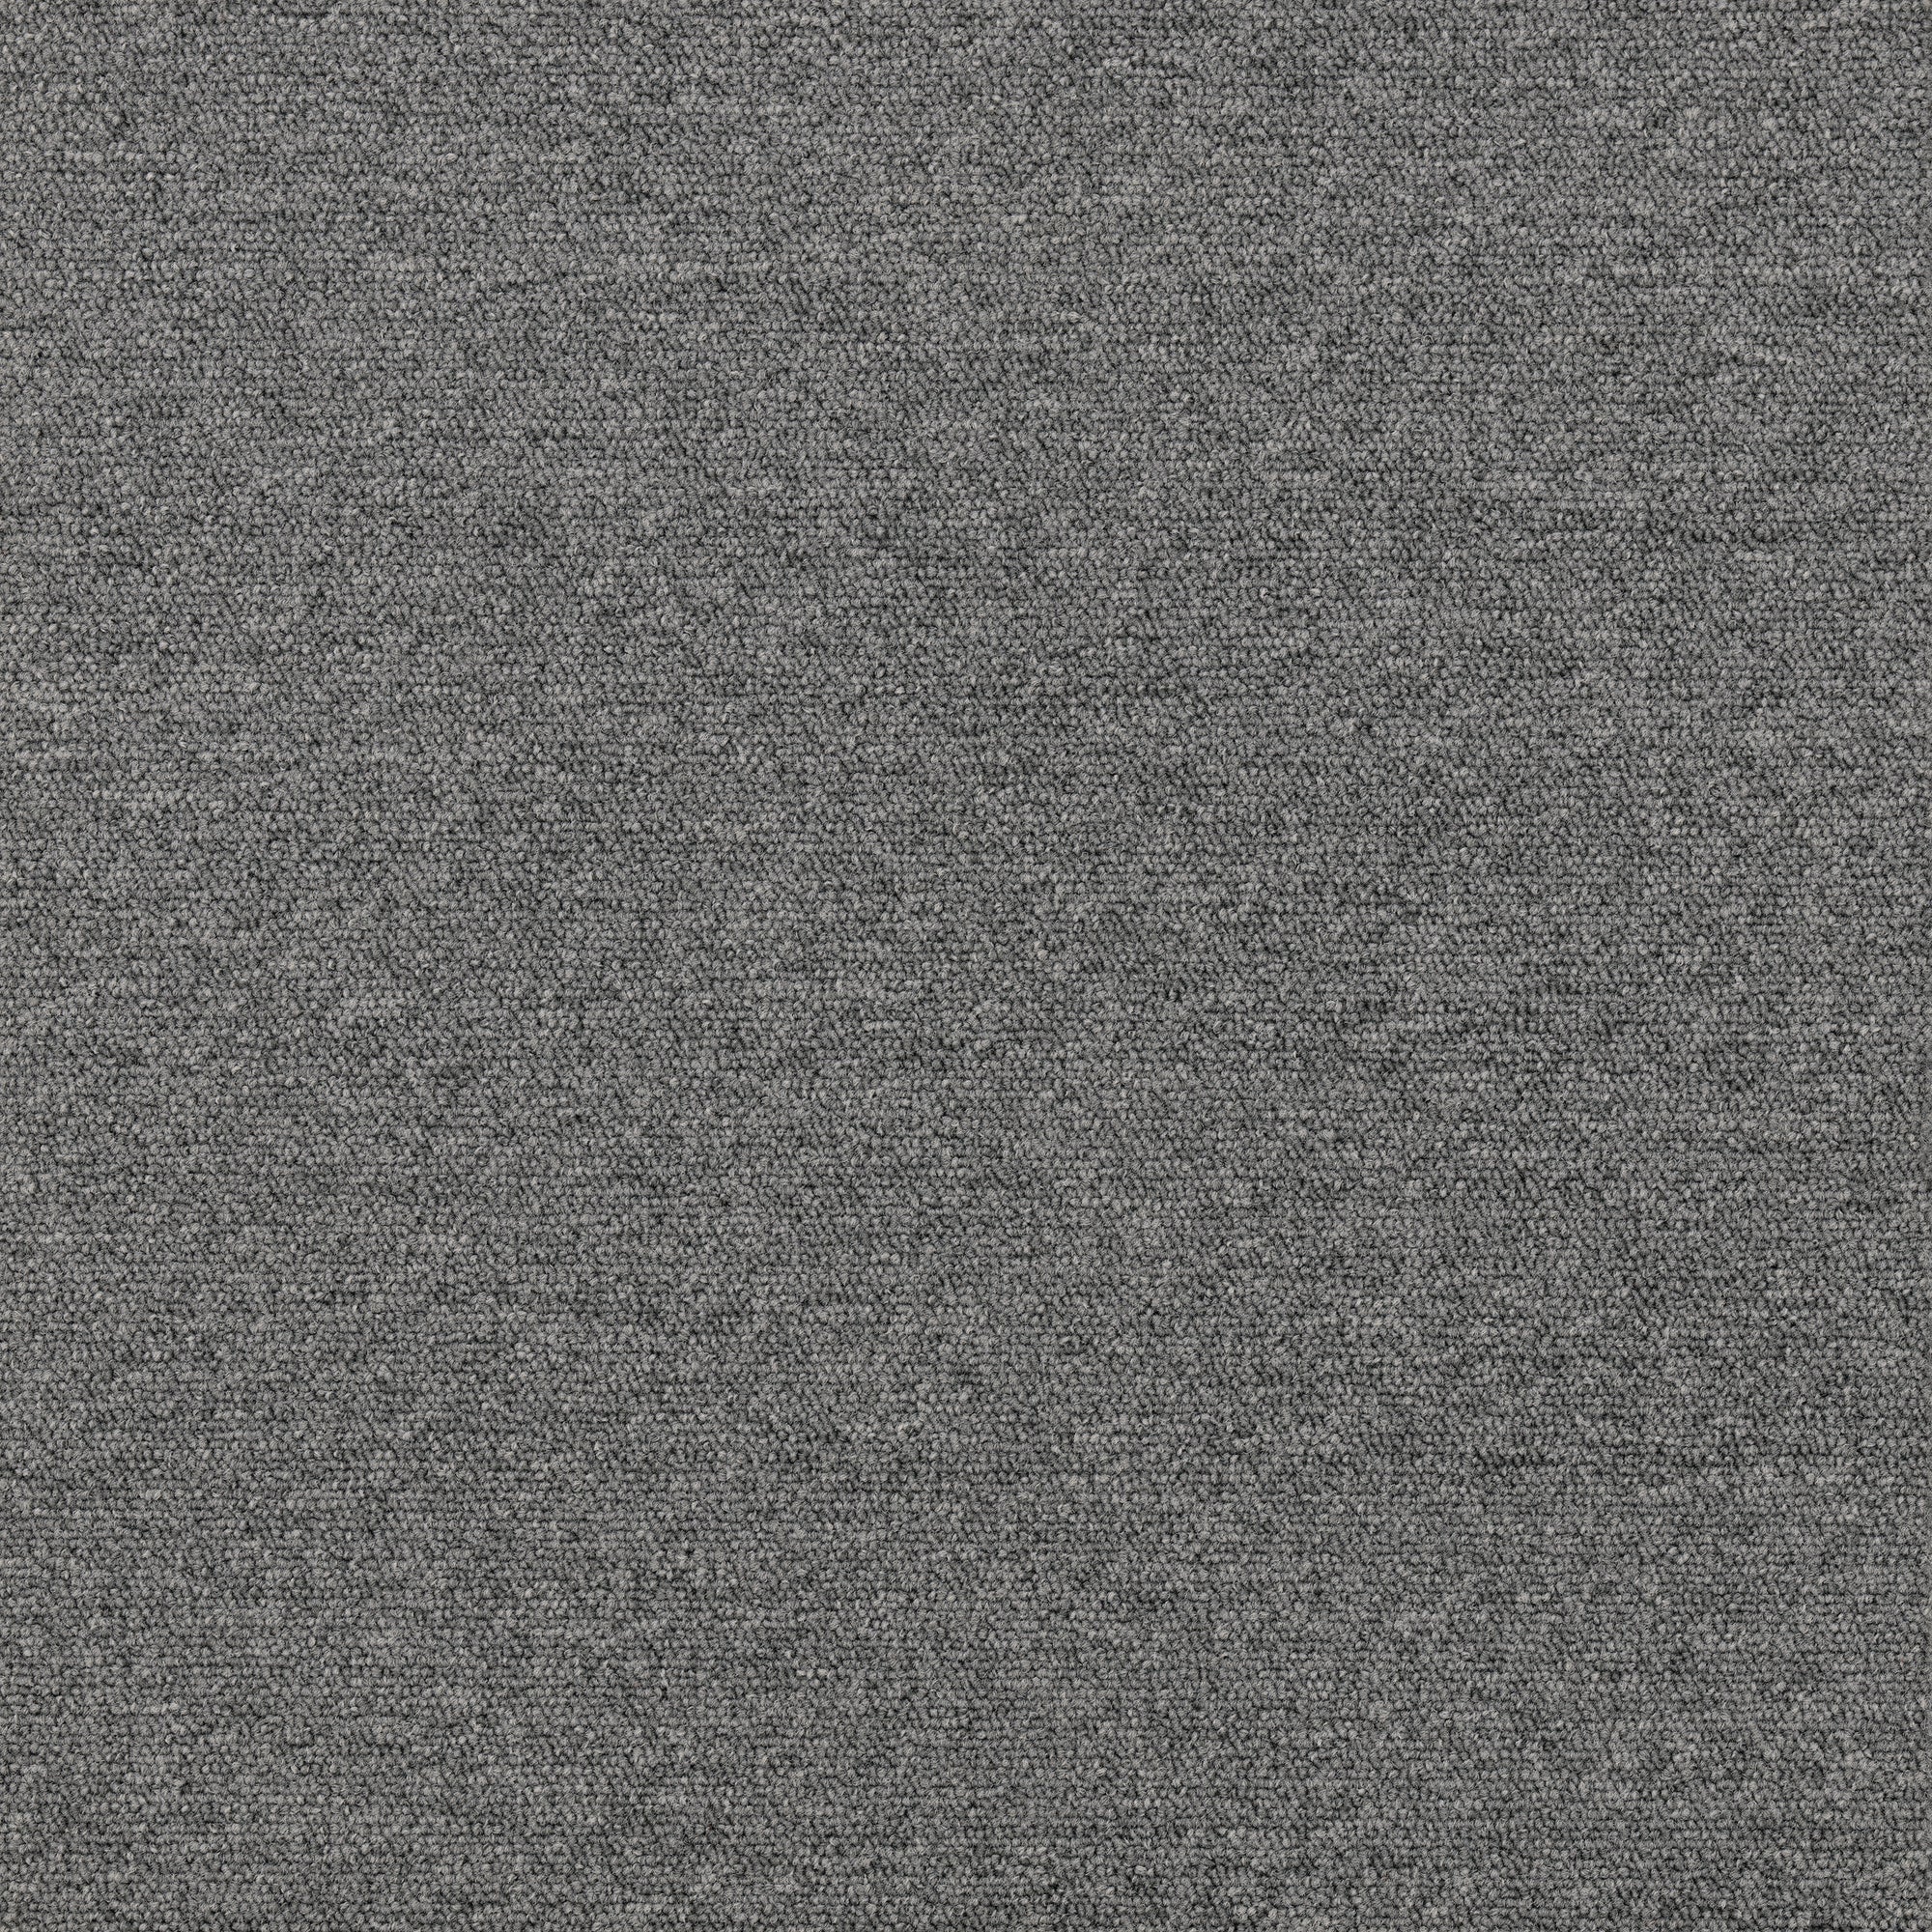 Plusfloor New Viilea Cloud Grey carpet tiles for offices 100% polypropylene